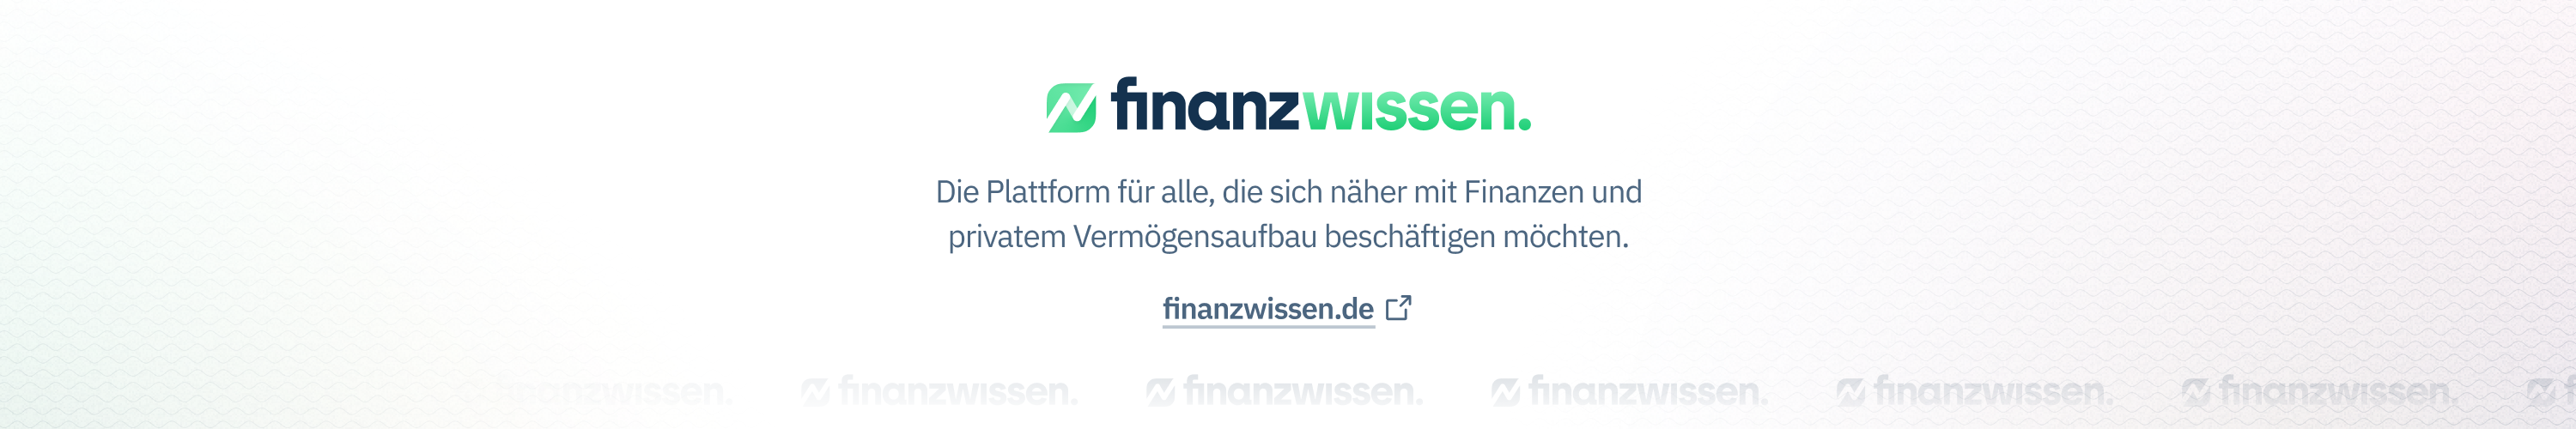 Finanzwissen.de / startup von Flensburg / Background